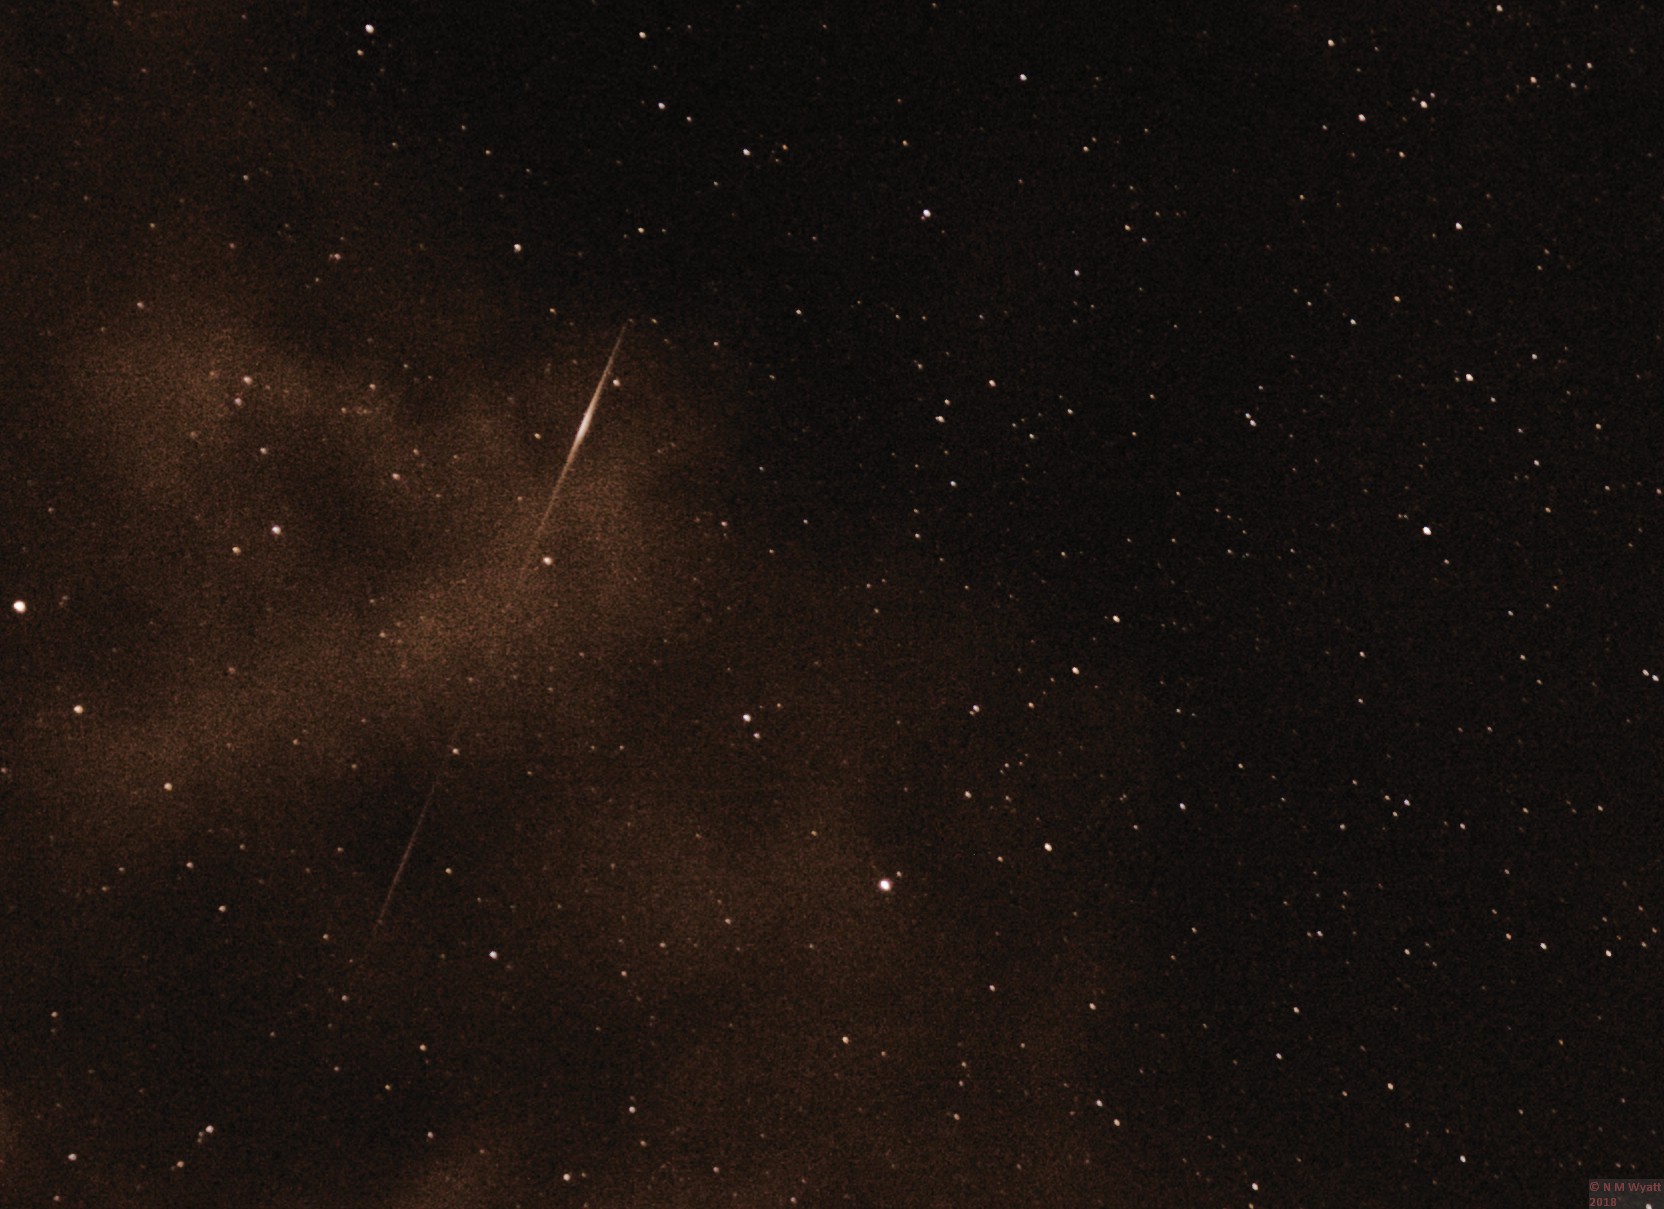 A Perseid meteor seen through light cloud